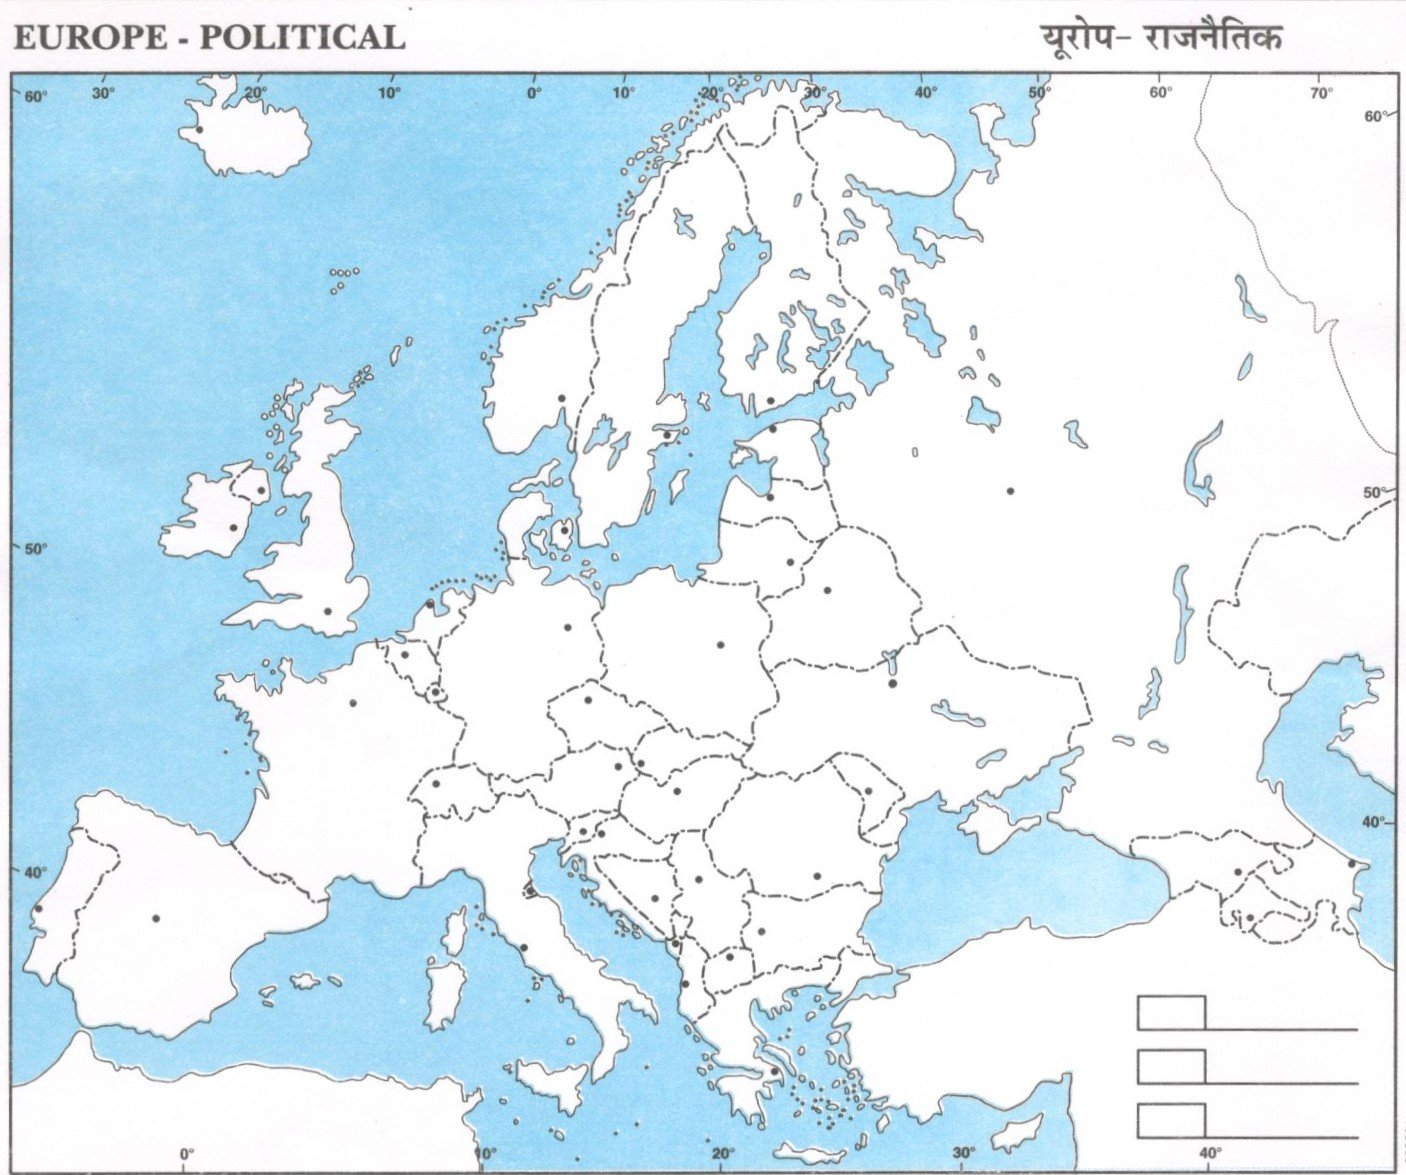 Europe Political Map Image AglaSem Schools 